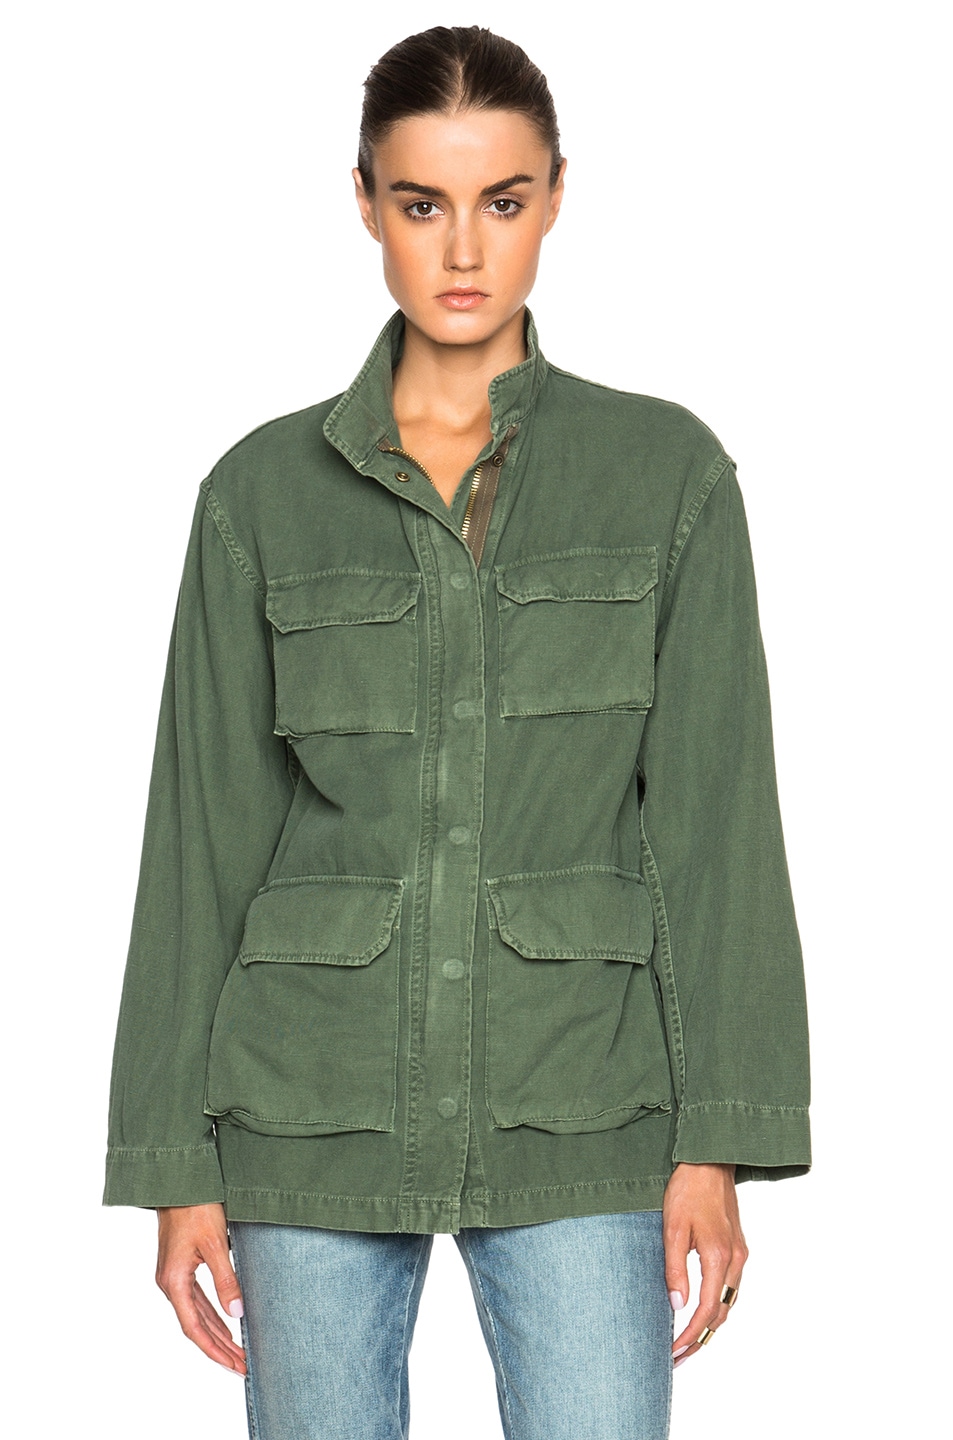 NILI LOTAN Military Jacket in Camo Green | FWRD